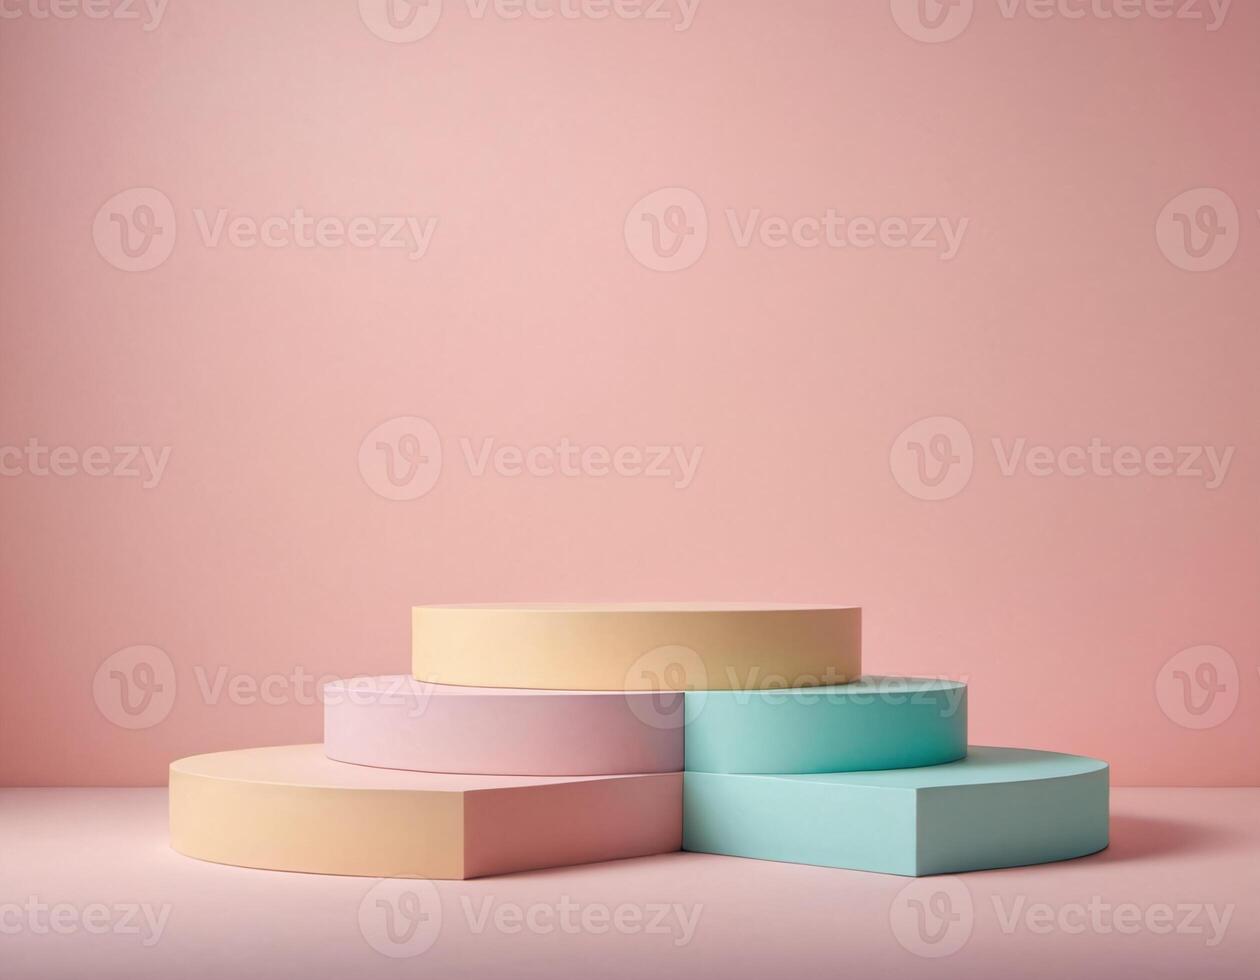 minimalistisch Pastell- Podium auf Sanft Hintergrund Produkt Anzeige Stand foto